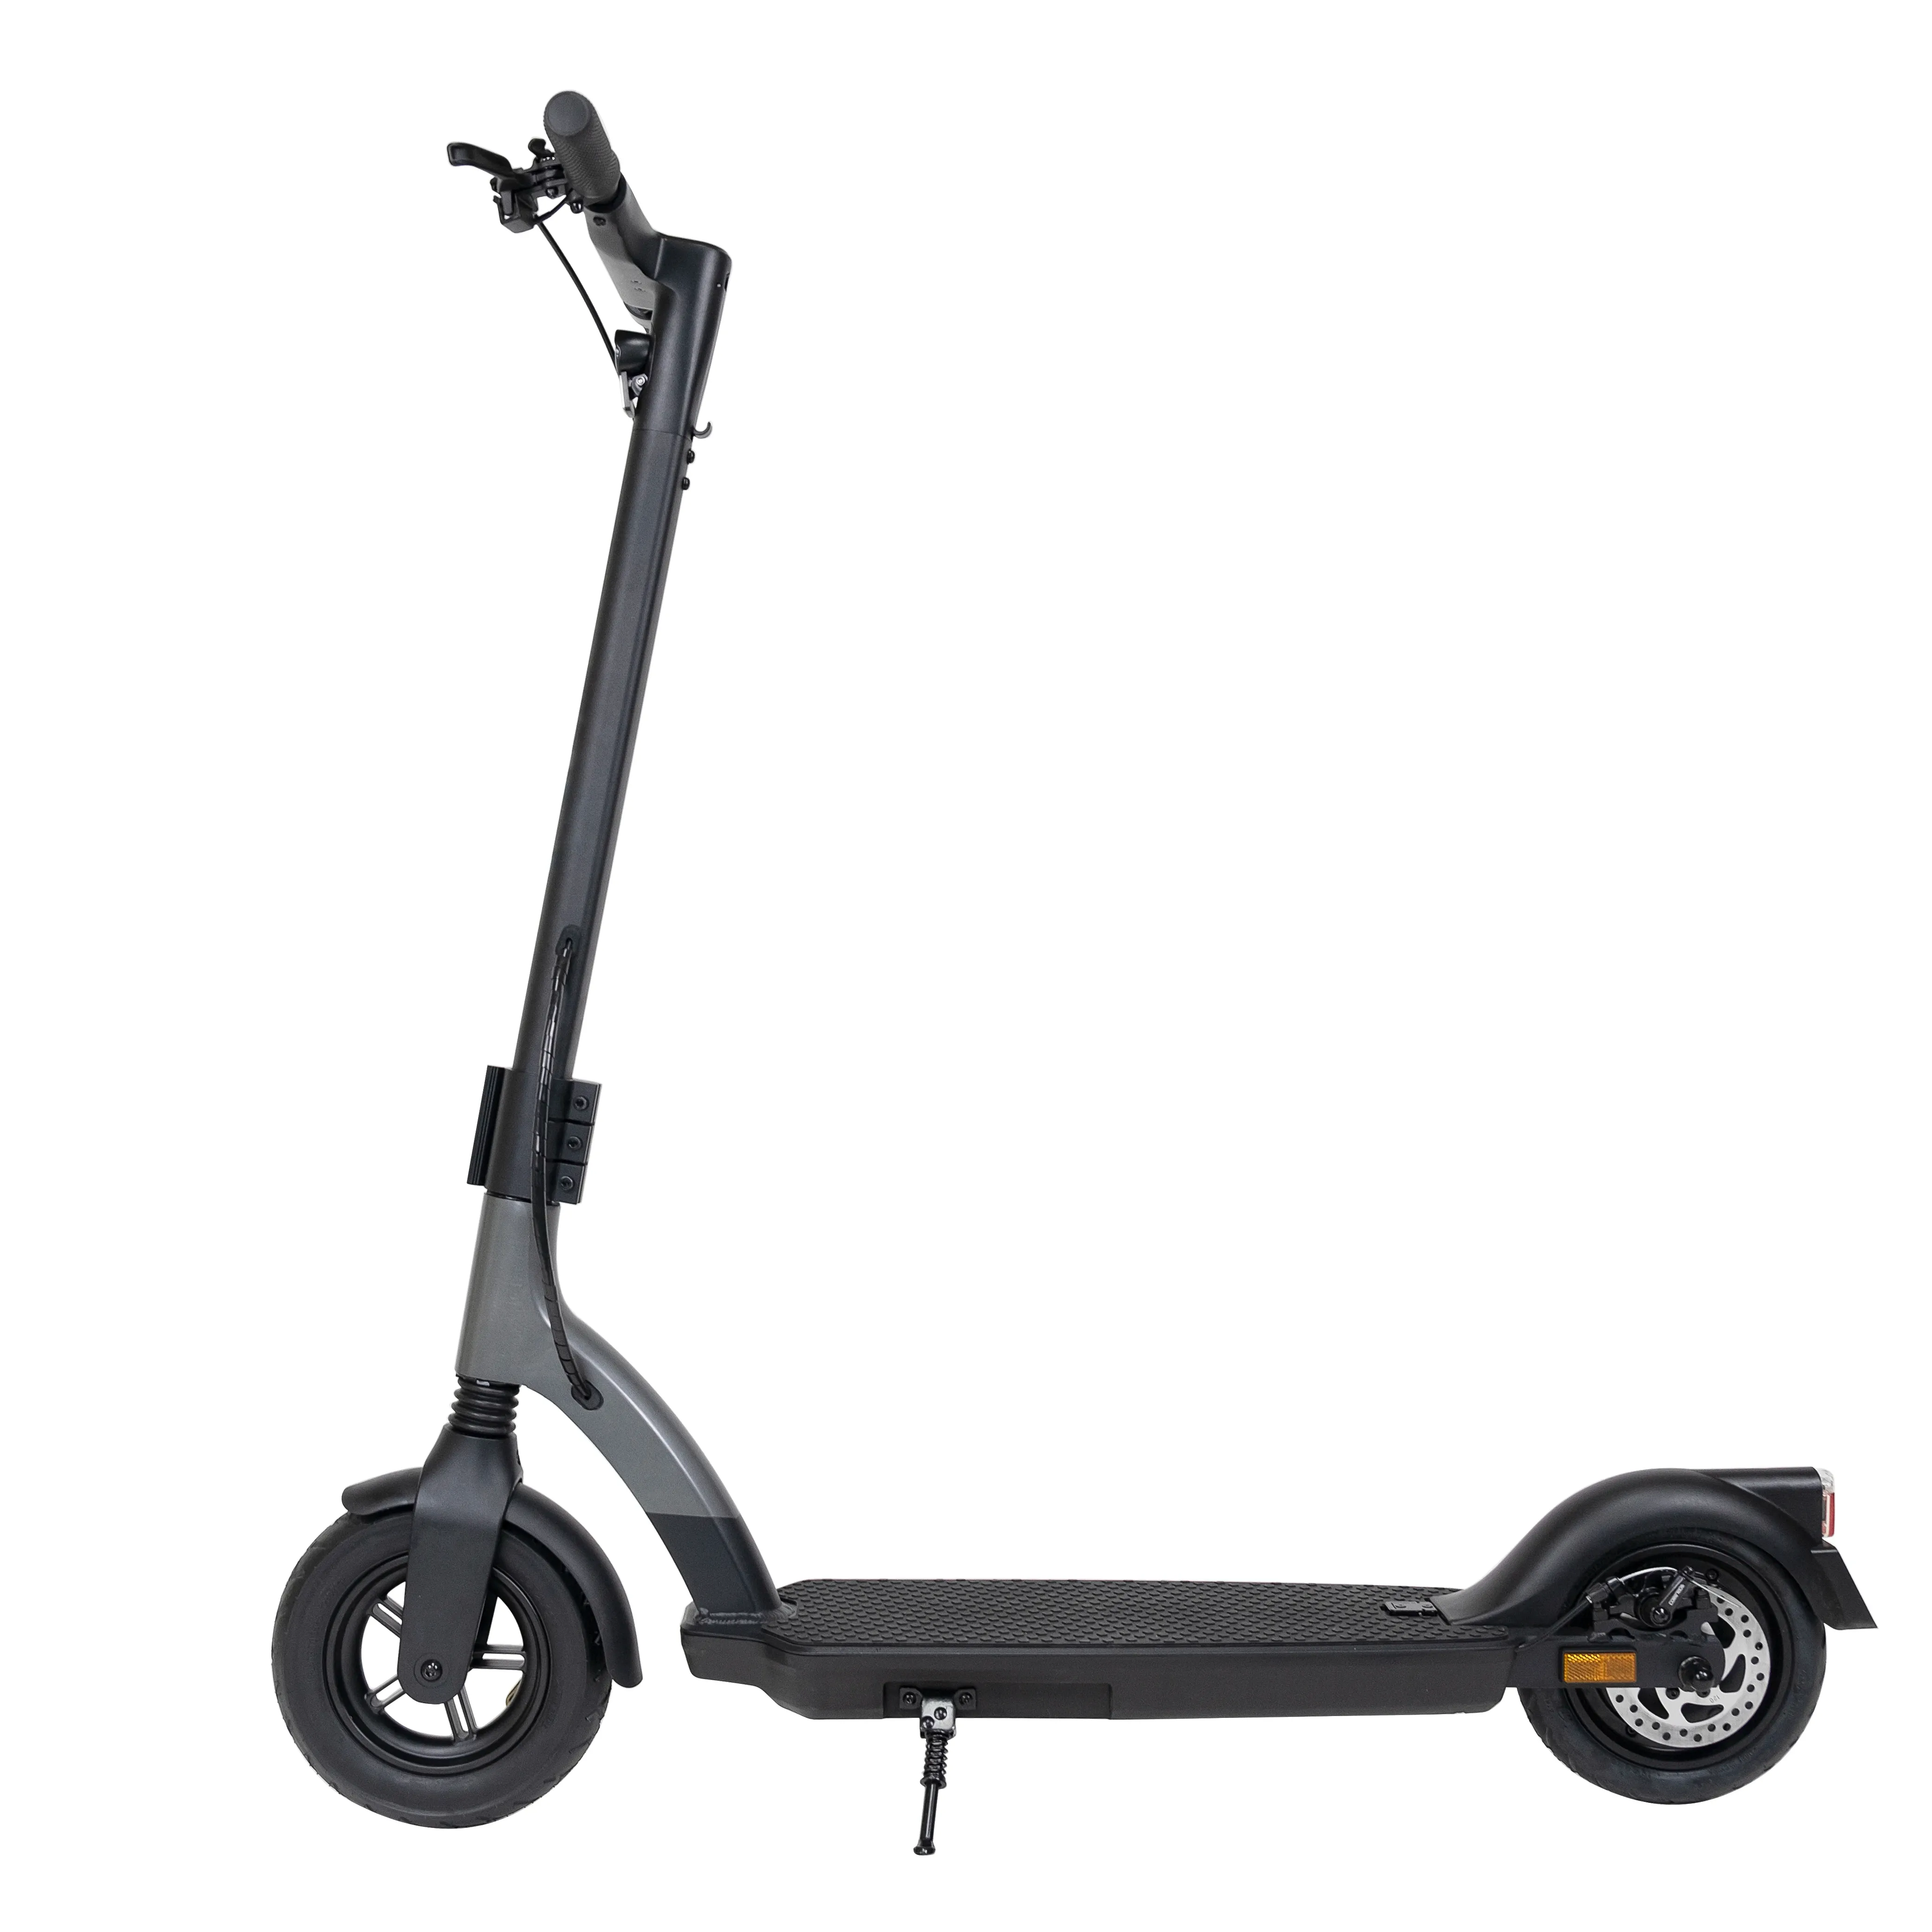 Sıcak satış büyük pil Scooter elektrikli yüksek ağırlık kapasitesi katlanabilir scooter toptan yetişkin için 2 tekerlekli katlanır elektrikli Scooter